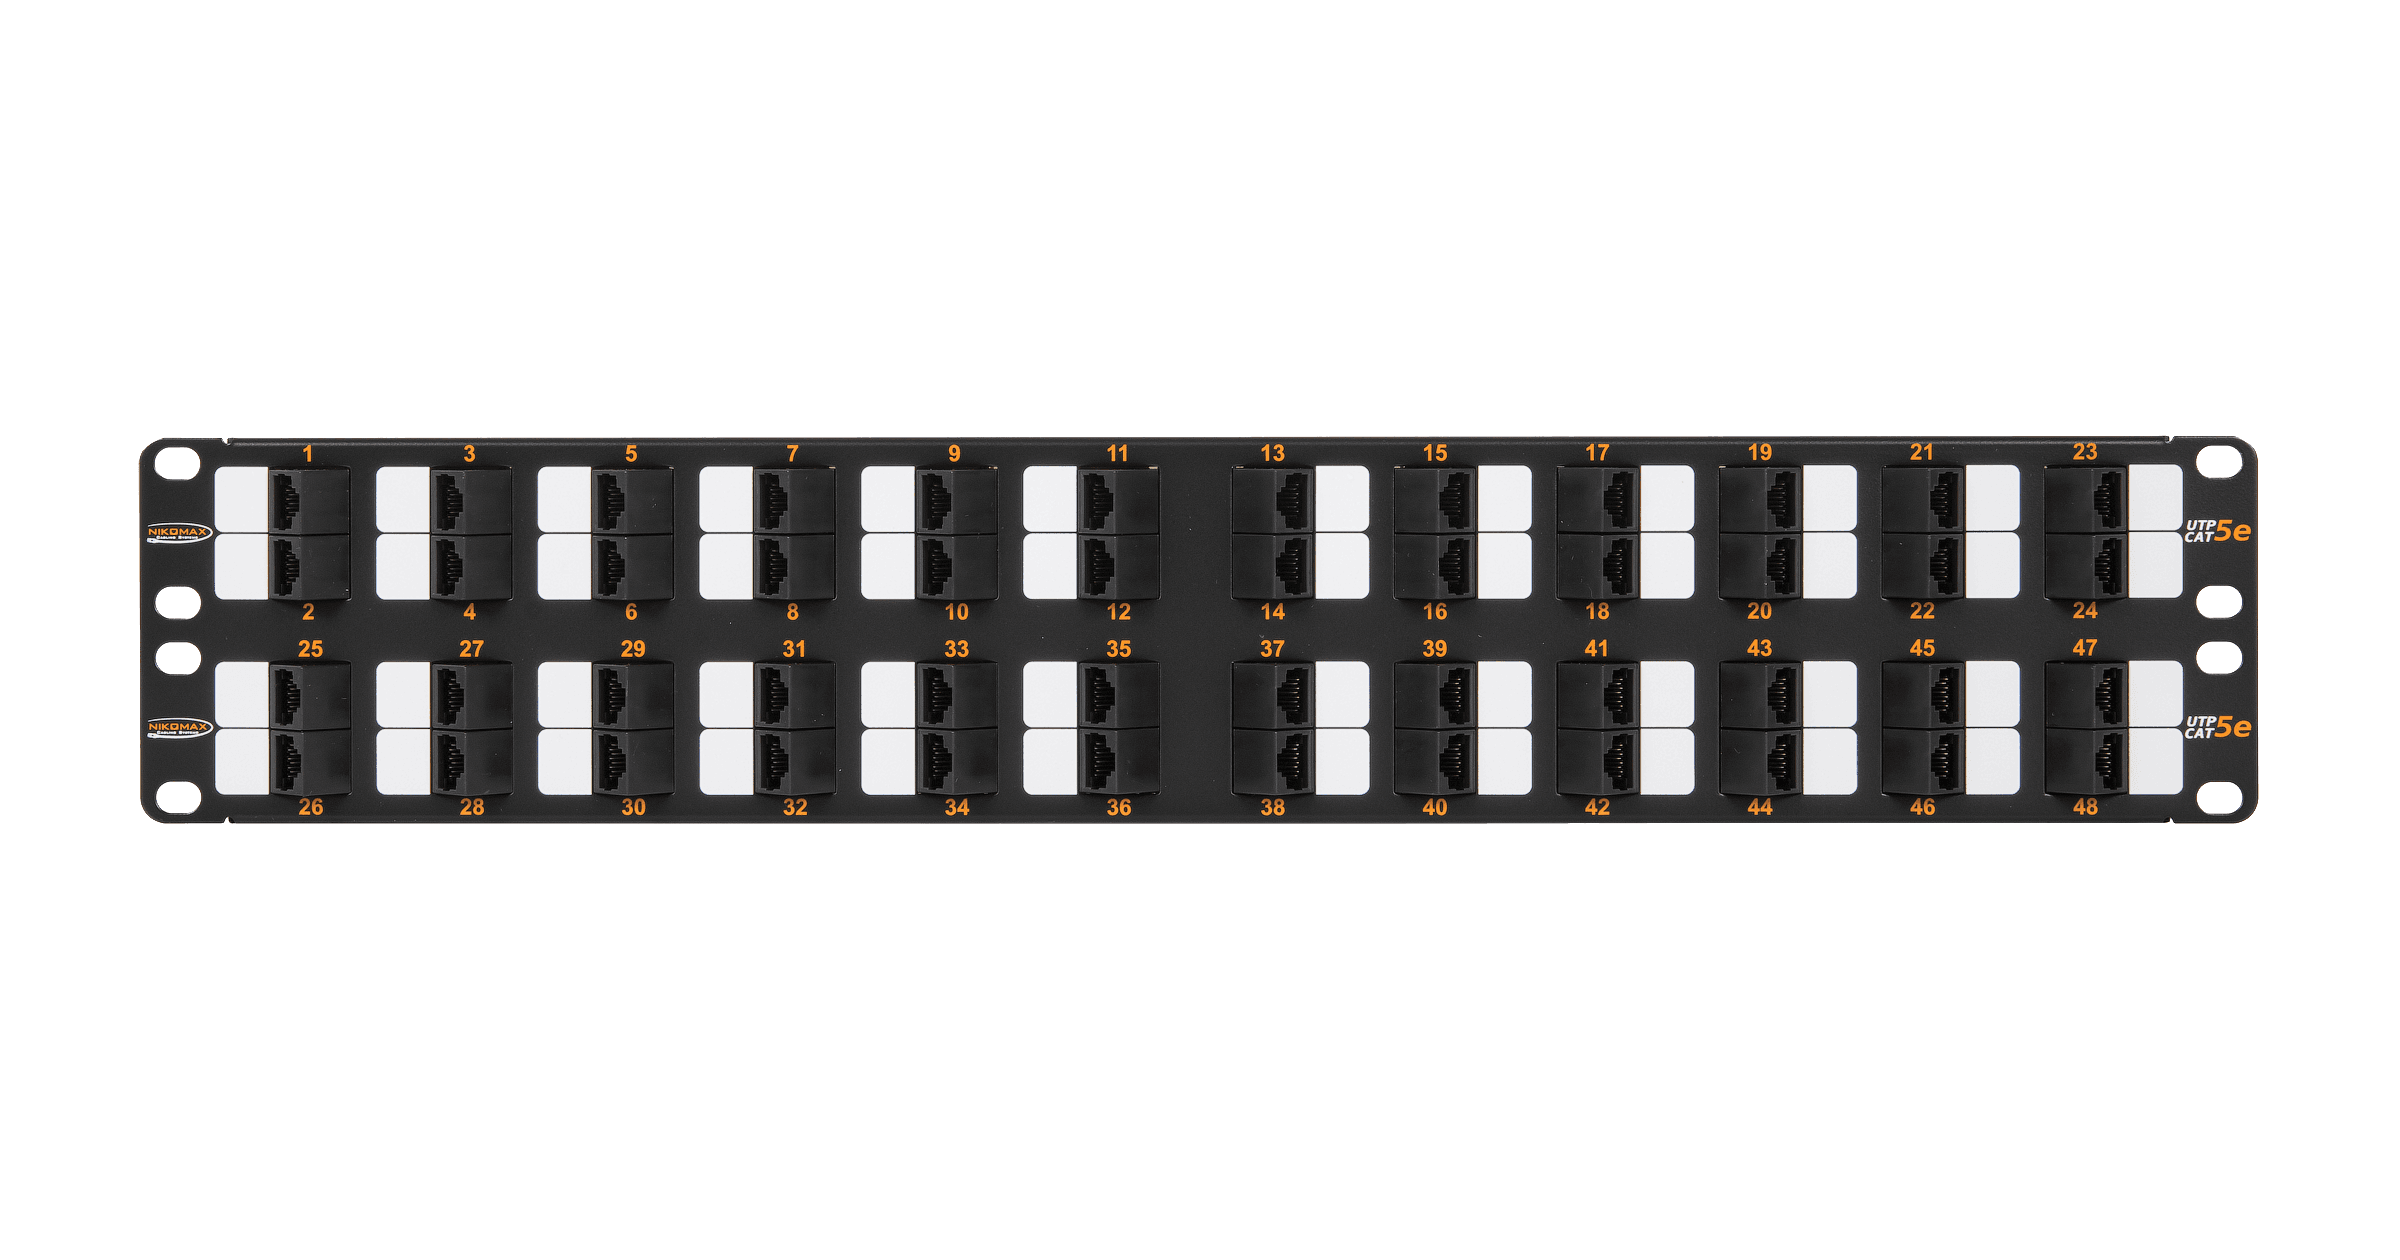 Коммутационная панель NIKOMAX 19", 2U, 48 угловых портов, Кат.5e (Класс D), 100МГц, RJ45/8P8C, 110/KRONE, T568A/B, неэкранированная, с органайзером, черная - гарантия: 5 лет расширенная / 25 лет системная